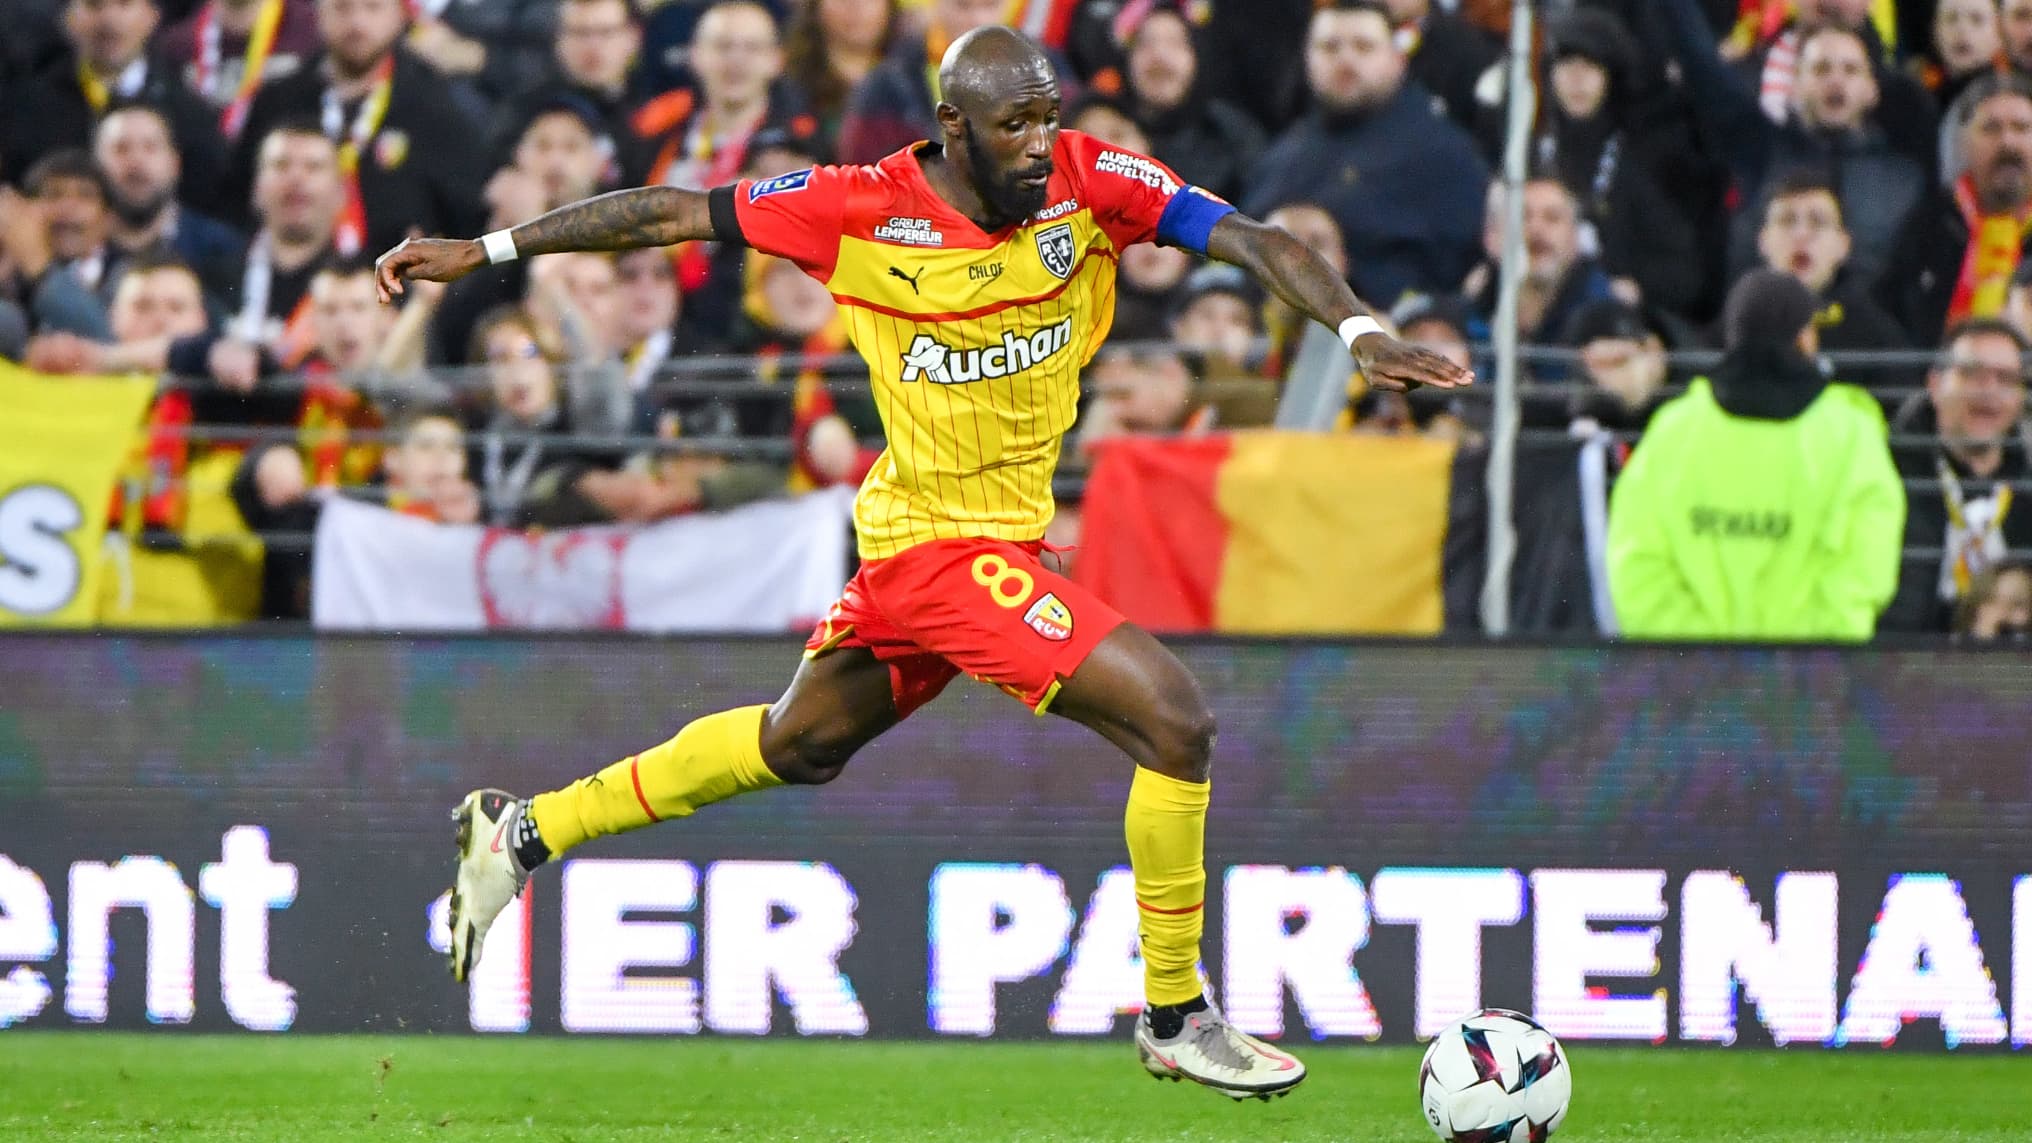 EN DIRECT - Ligue 1: suivez Montpellier-Lens en live